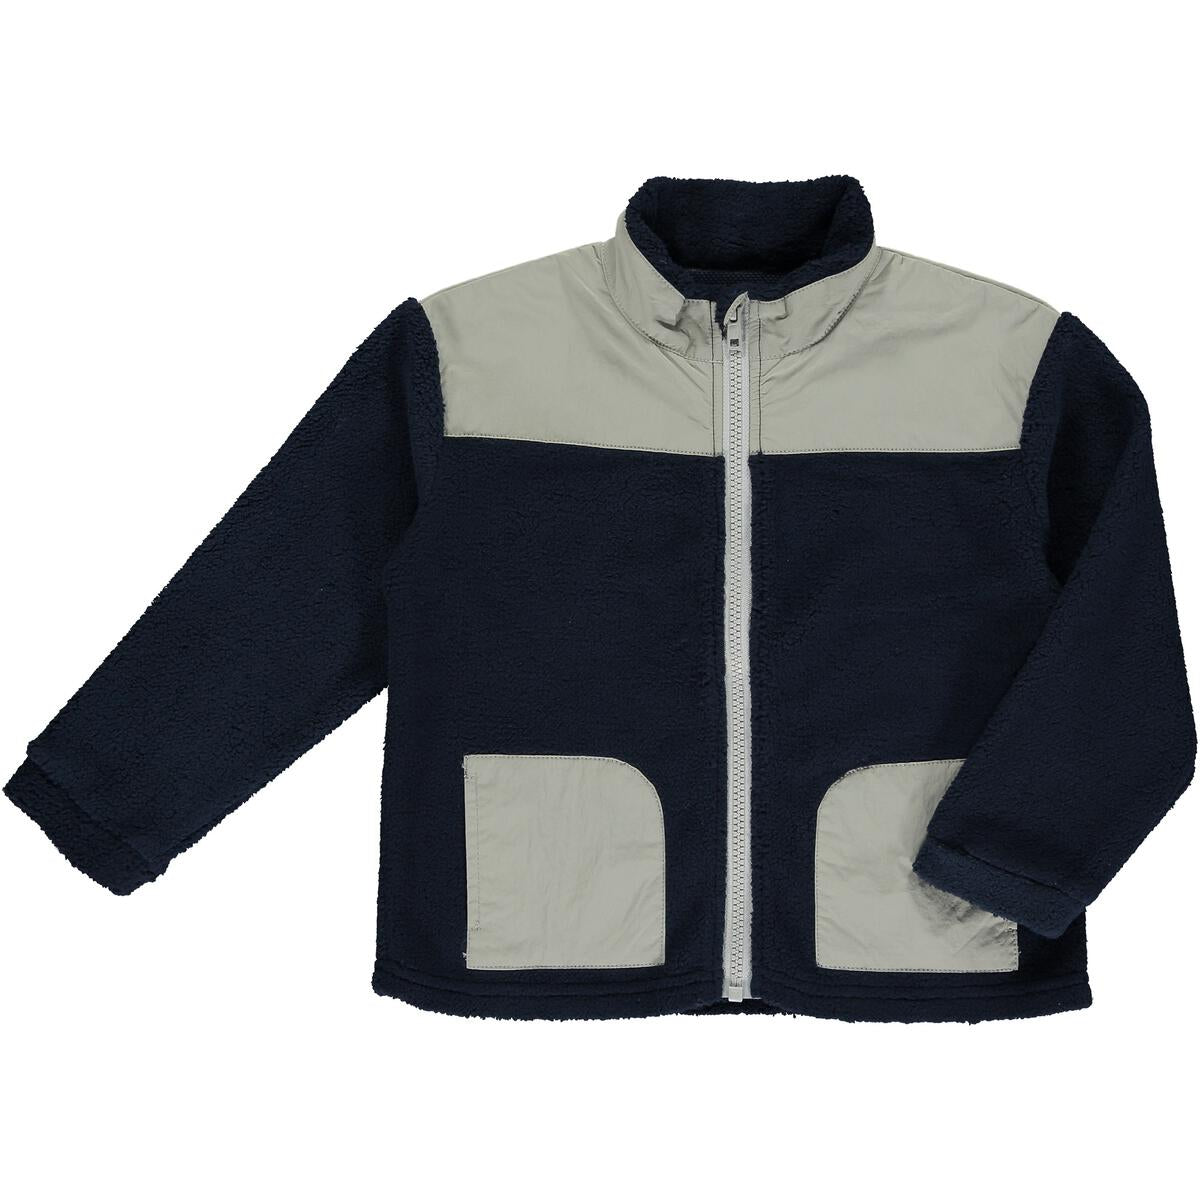 navy/gray husky sherpa jacket